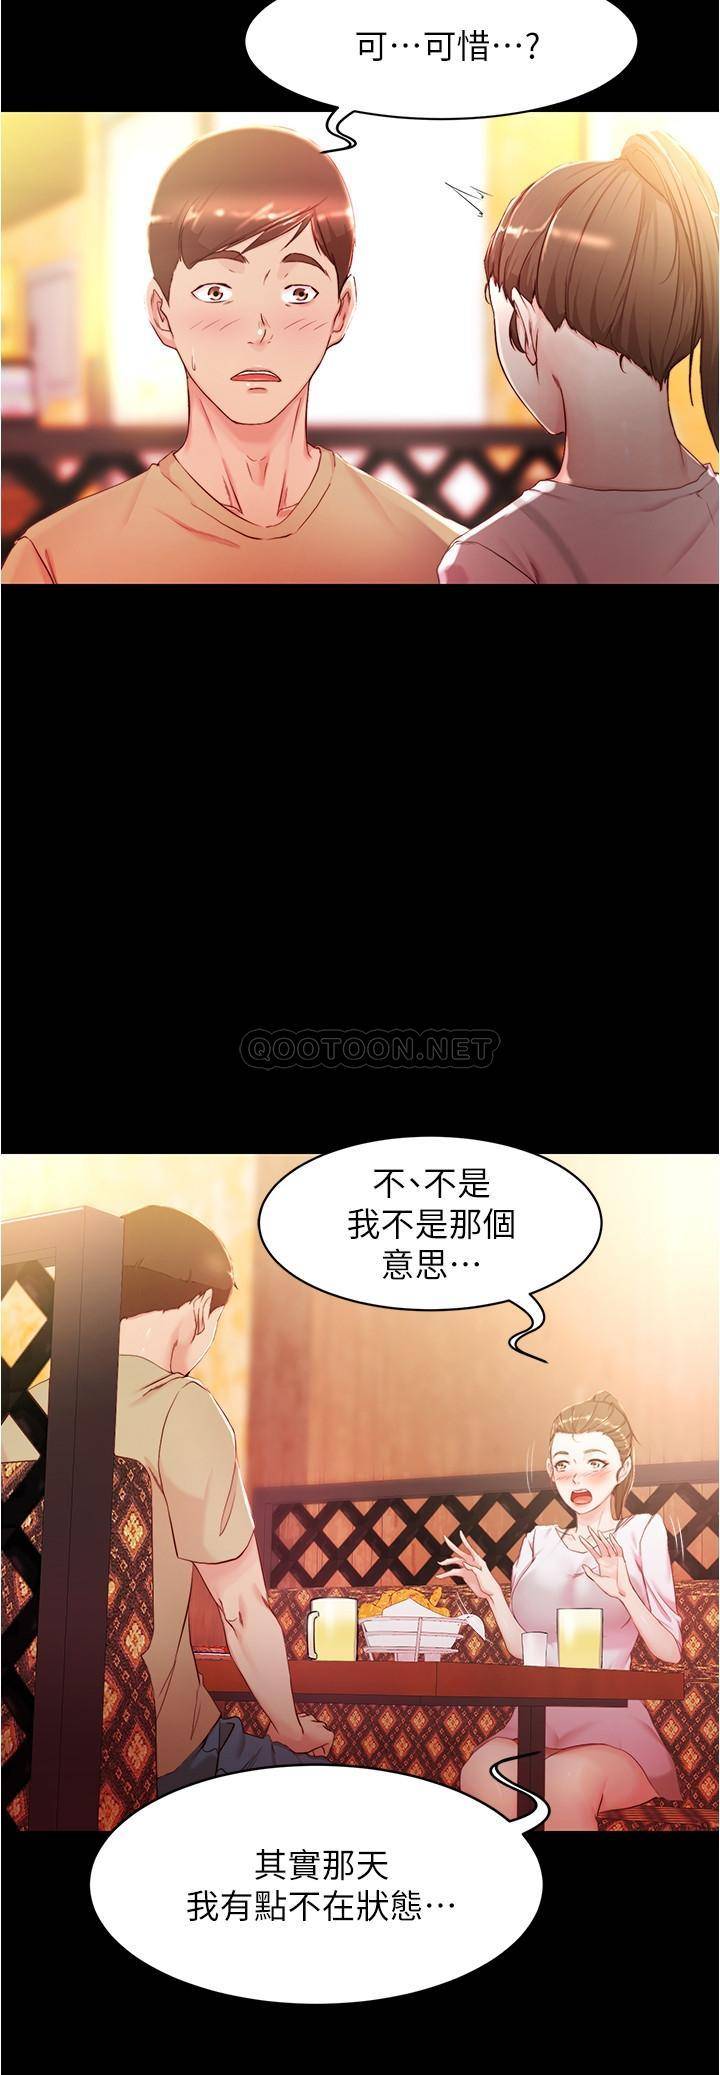 韩国污漫画 小褲褲筆記 第24话 - 让人欲罢不能的汉娜 5